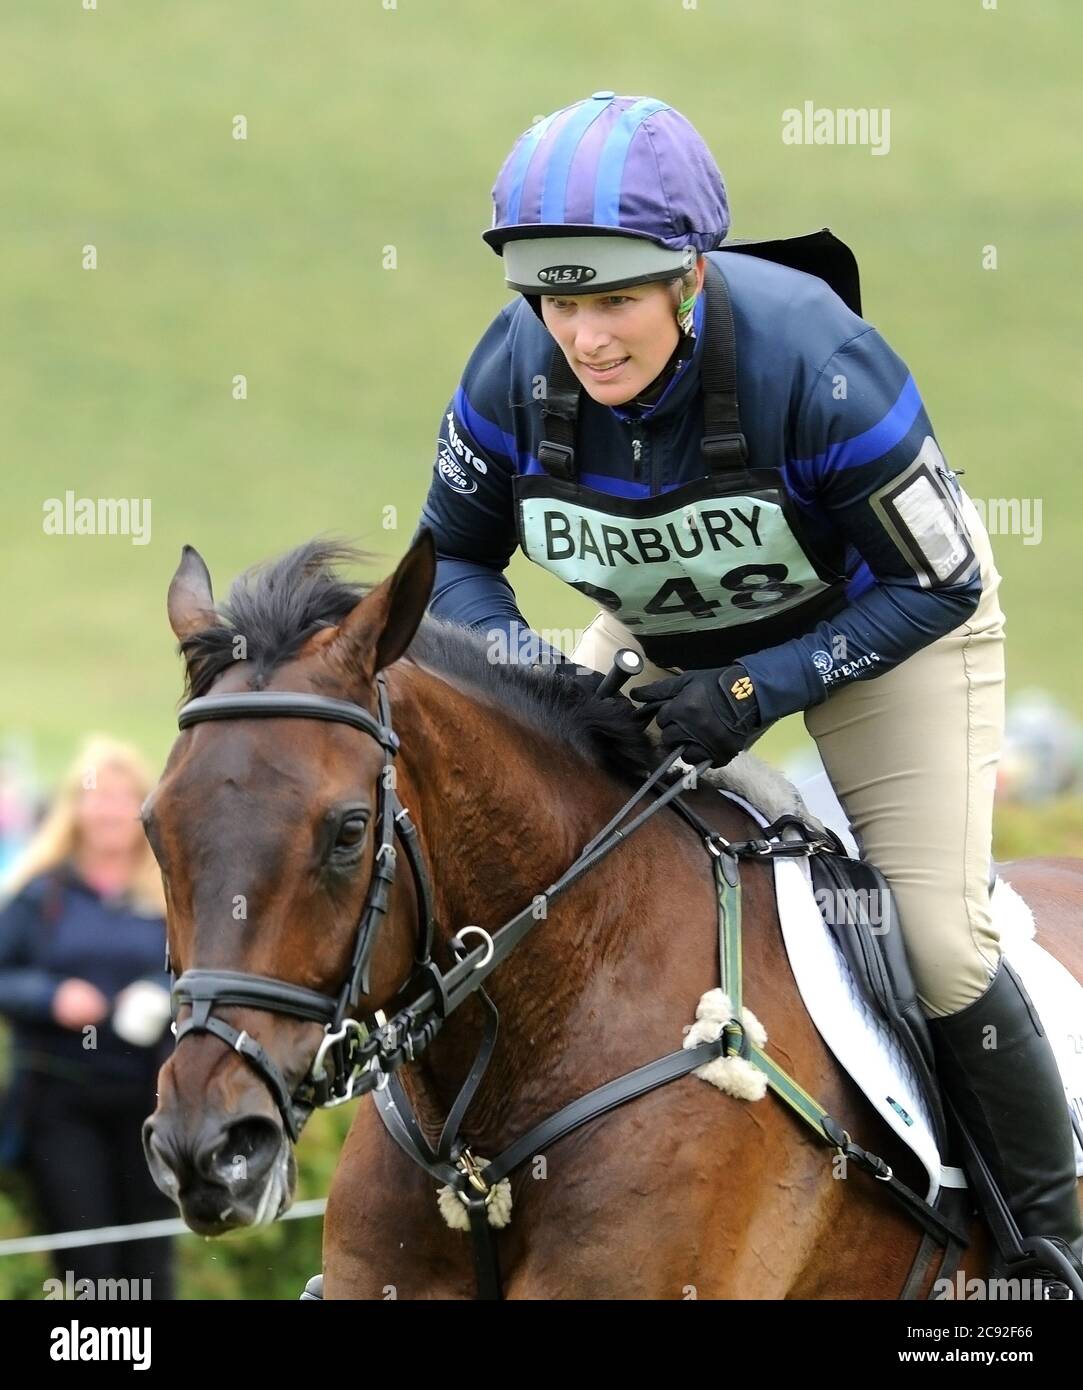 Zara Tindall MBE Olympian equestre in gara al campione del mondo di Eventing Eventing 2006 figlia di Anna, Principessa reale e Capt. Mark Phillips Foto Stock